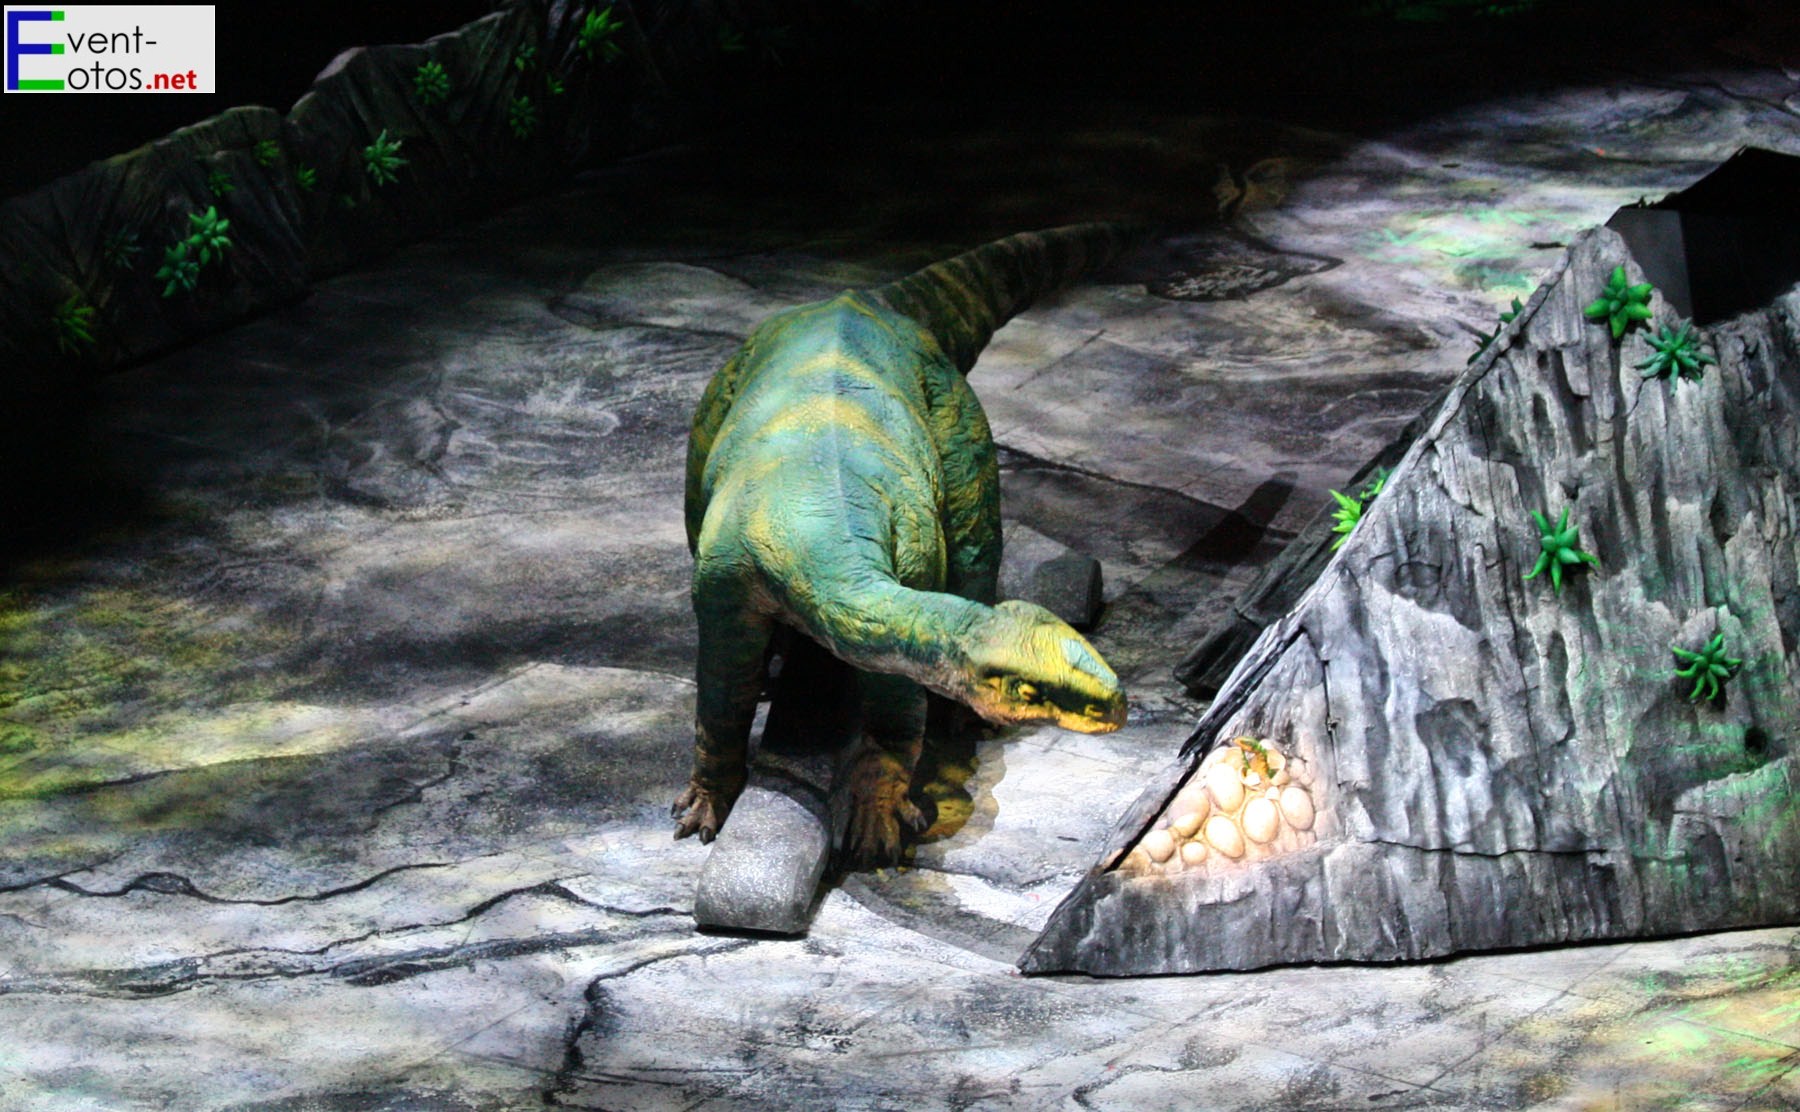 Plateosaurus beim Gelege
